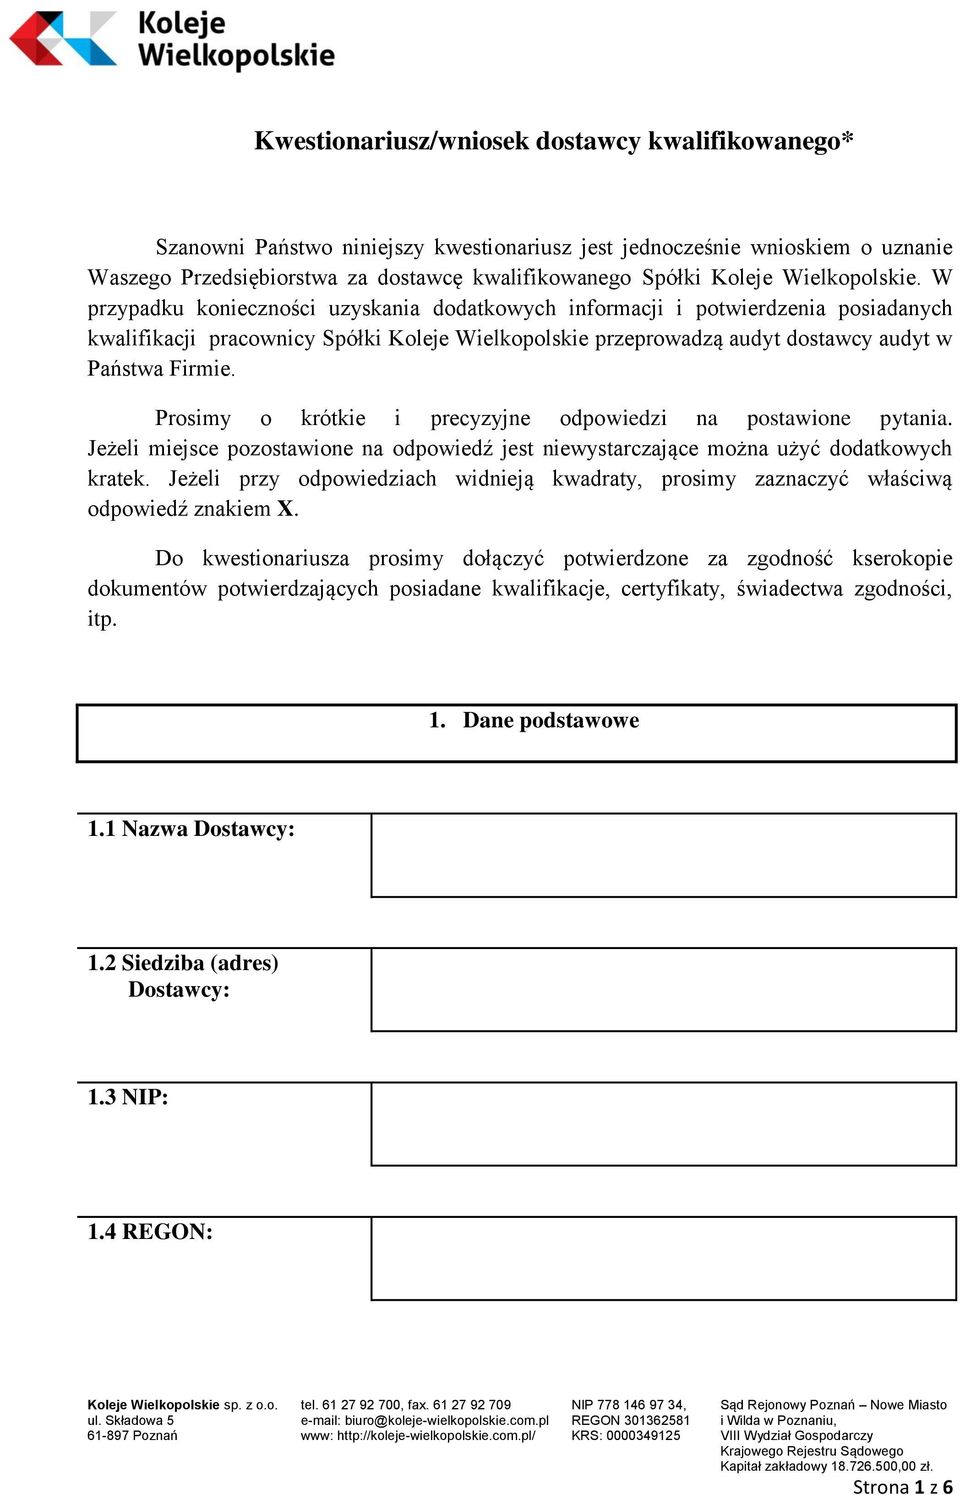 W przypadku konieczności uzyskania dodatkowych informacji i potwierdzenia posiadanych kwalifikacji pracownicy Spółki Koleje Wielkopolskie przeprowadzą audyt dostawcy audyt w Państwa Firmie.